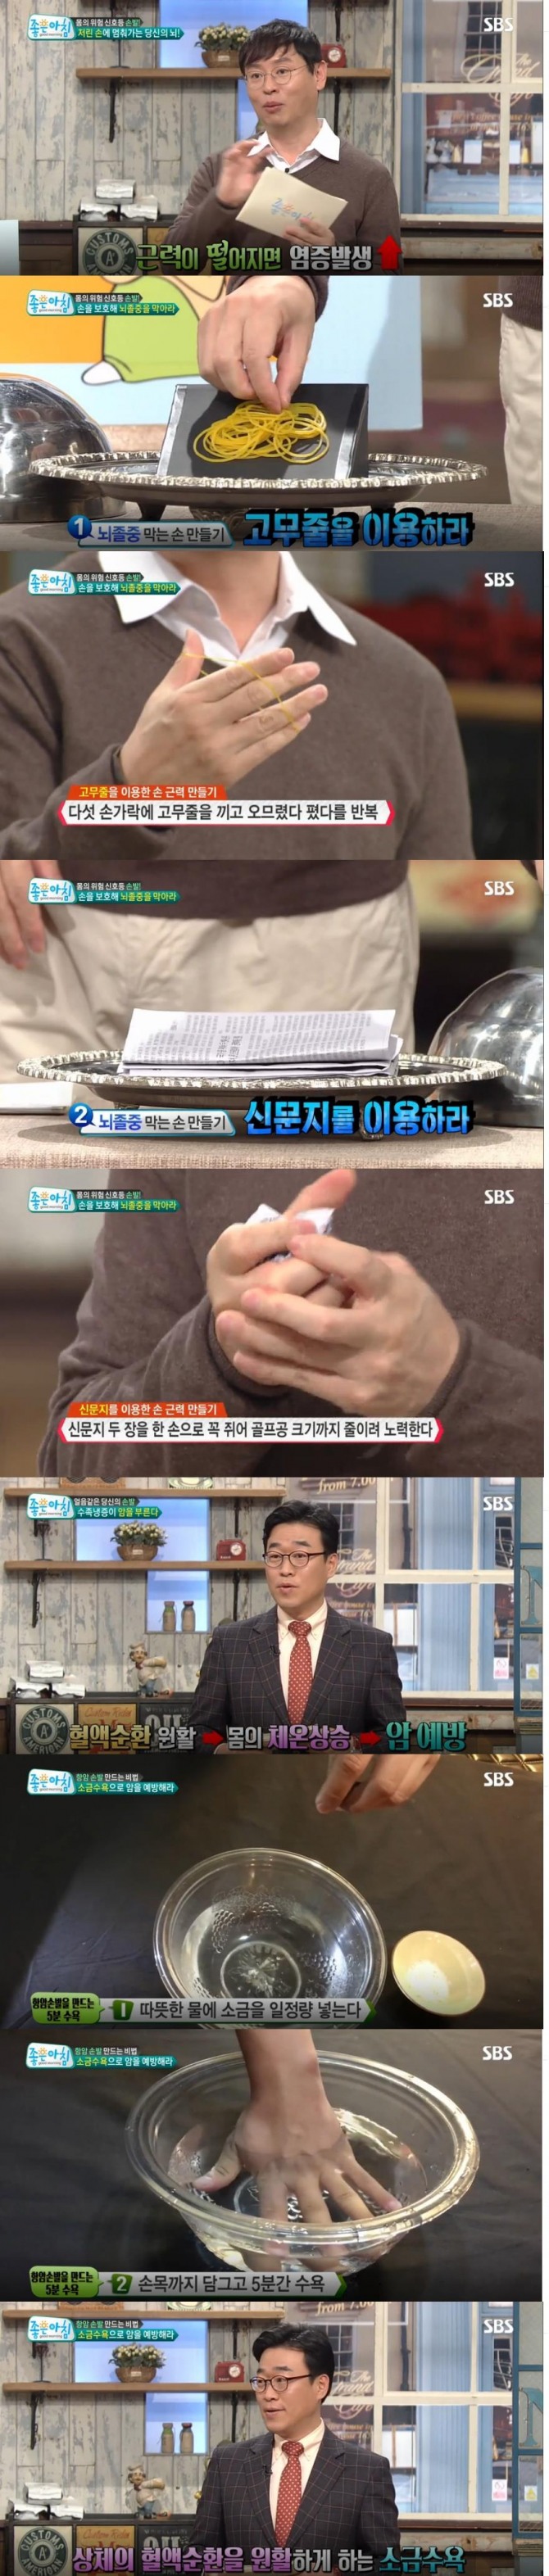 24일 아침 방송된 SBS '좋은 아침'에서는 '몸의 위험 신호등' 특집으로 손을 보호해 뇌졸중을 막는 운동법이 소개됐다./사진=SBS 방송 캡처